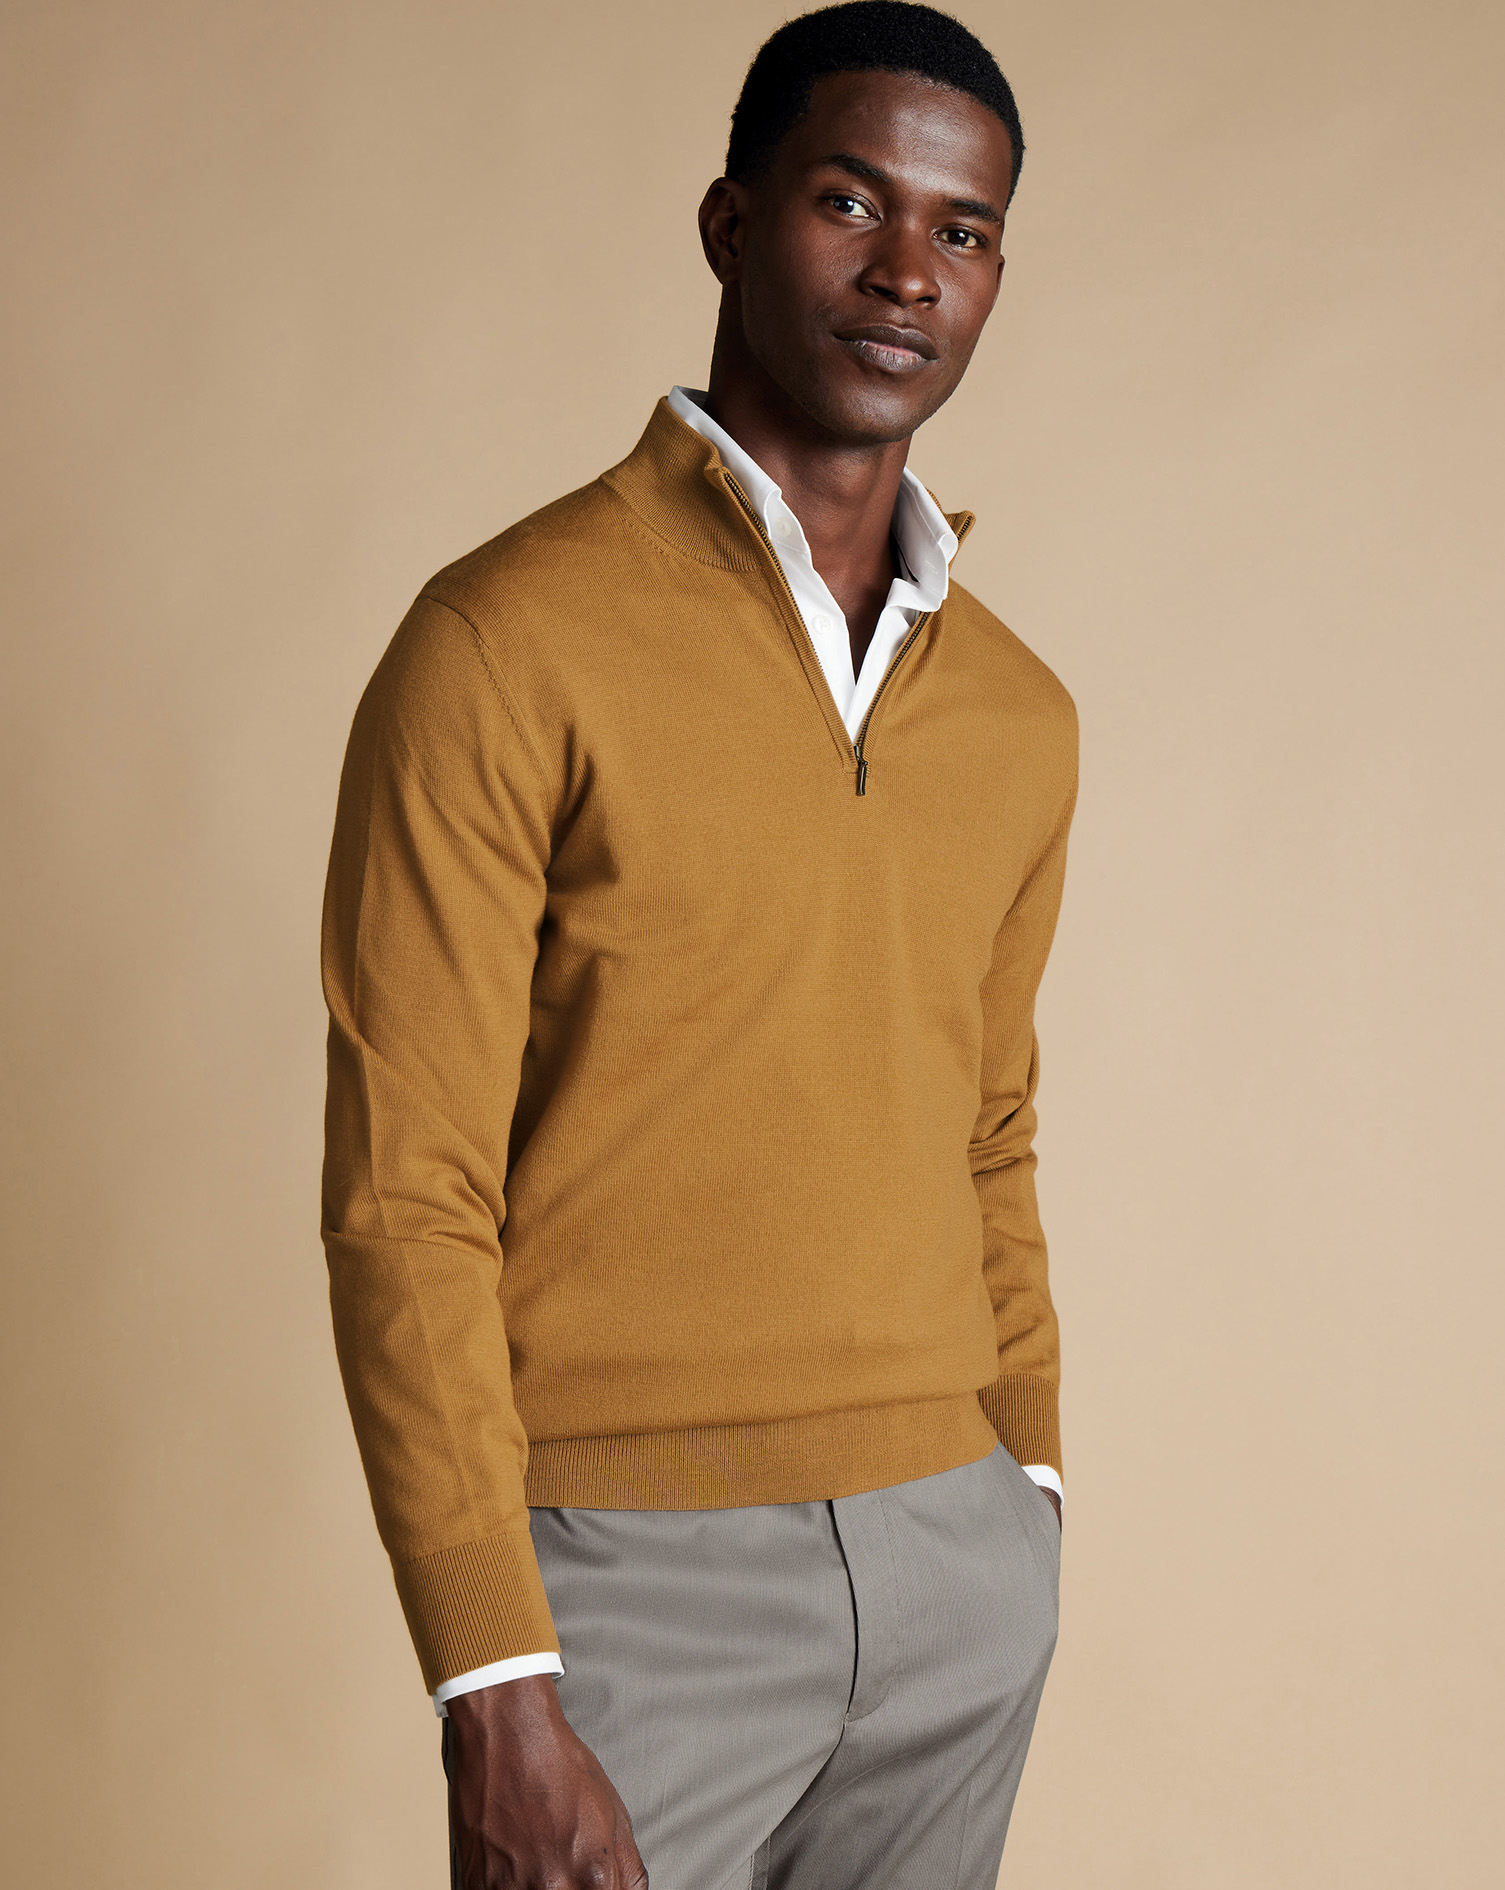 Men's Charles Tyrwhitt Merino Zip Neck Sweater - Gold Yellow Size Medium Wool
